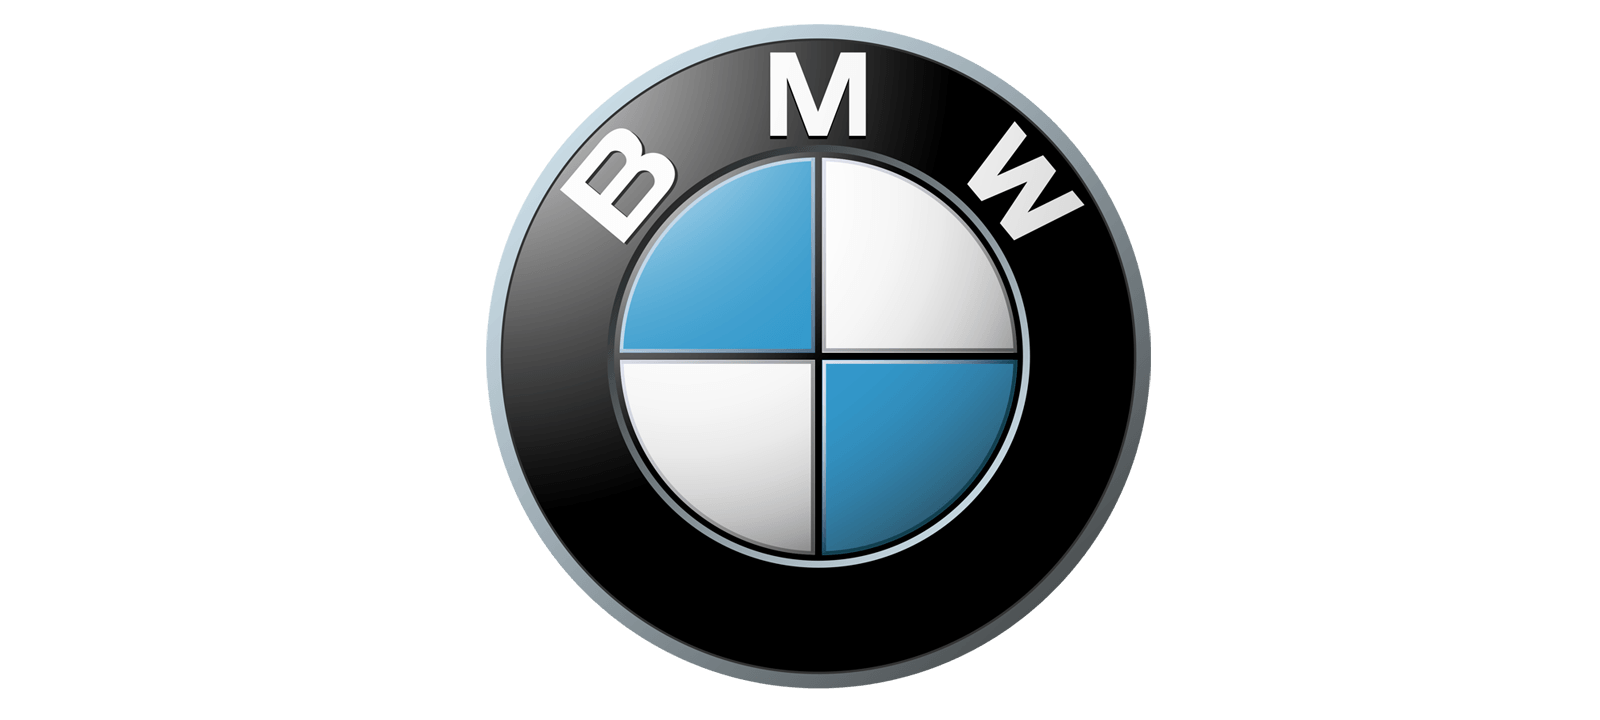 Le Logo - Le logo BMW | Les marques de voitures